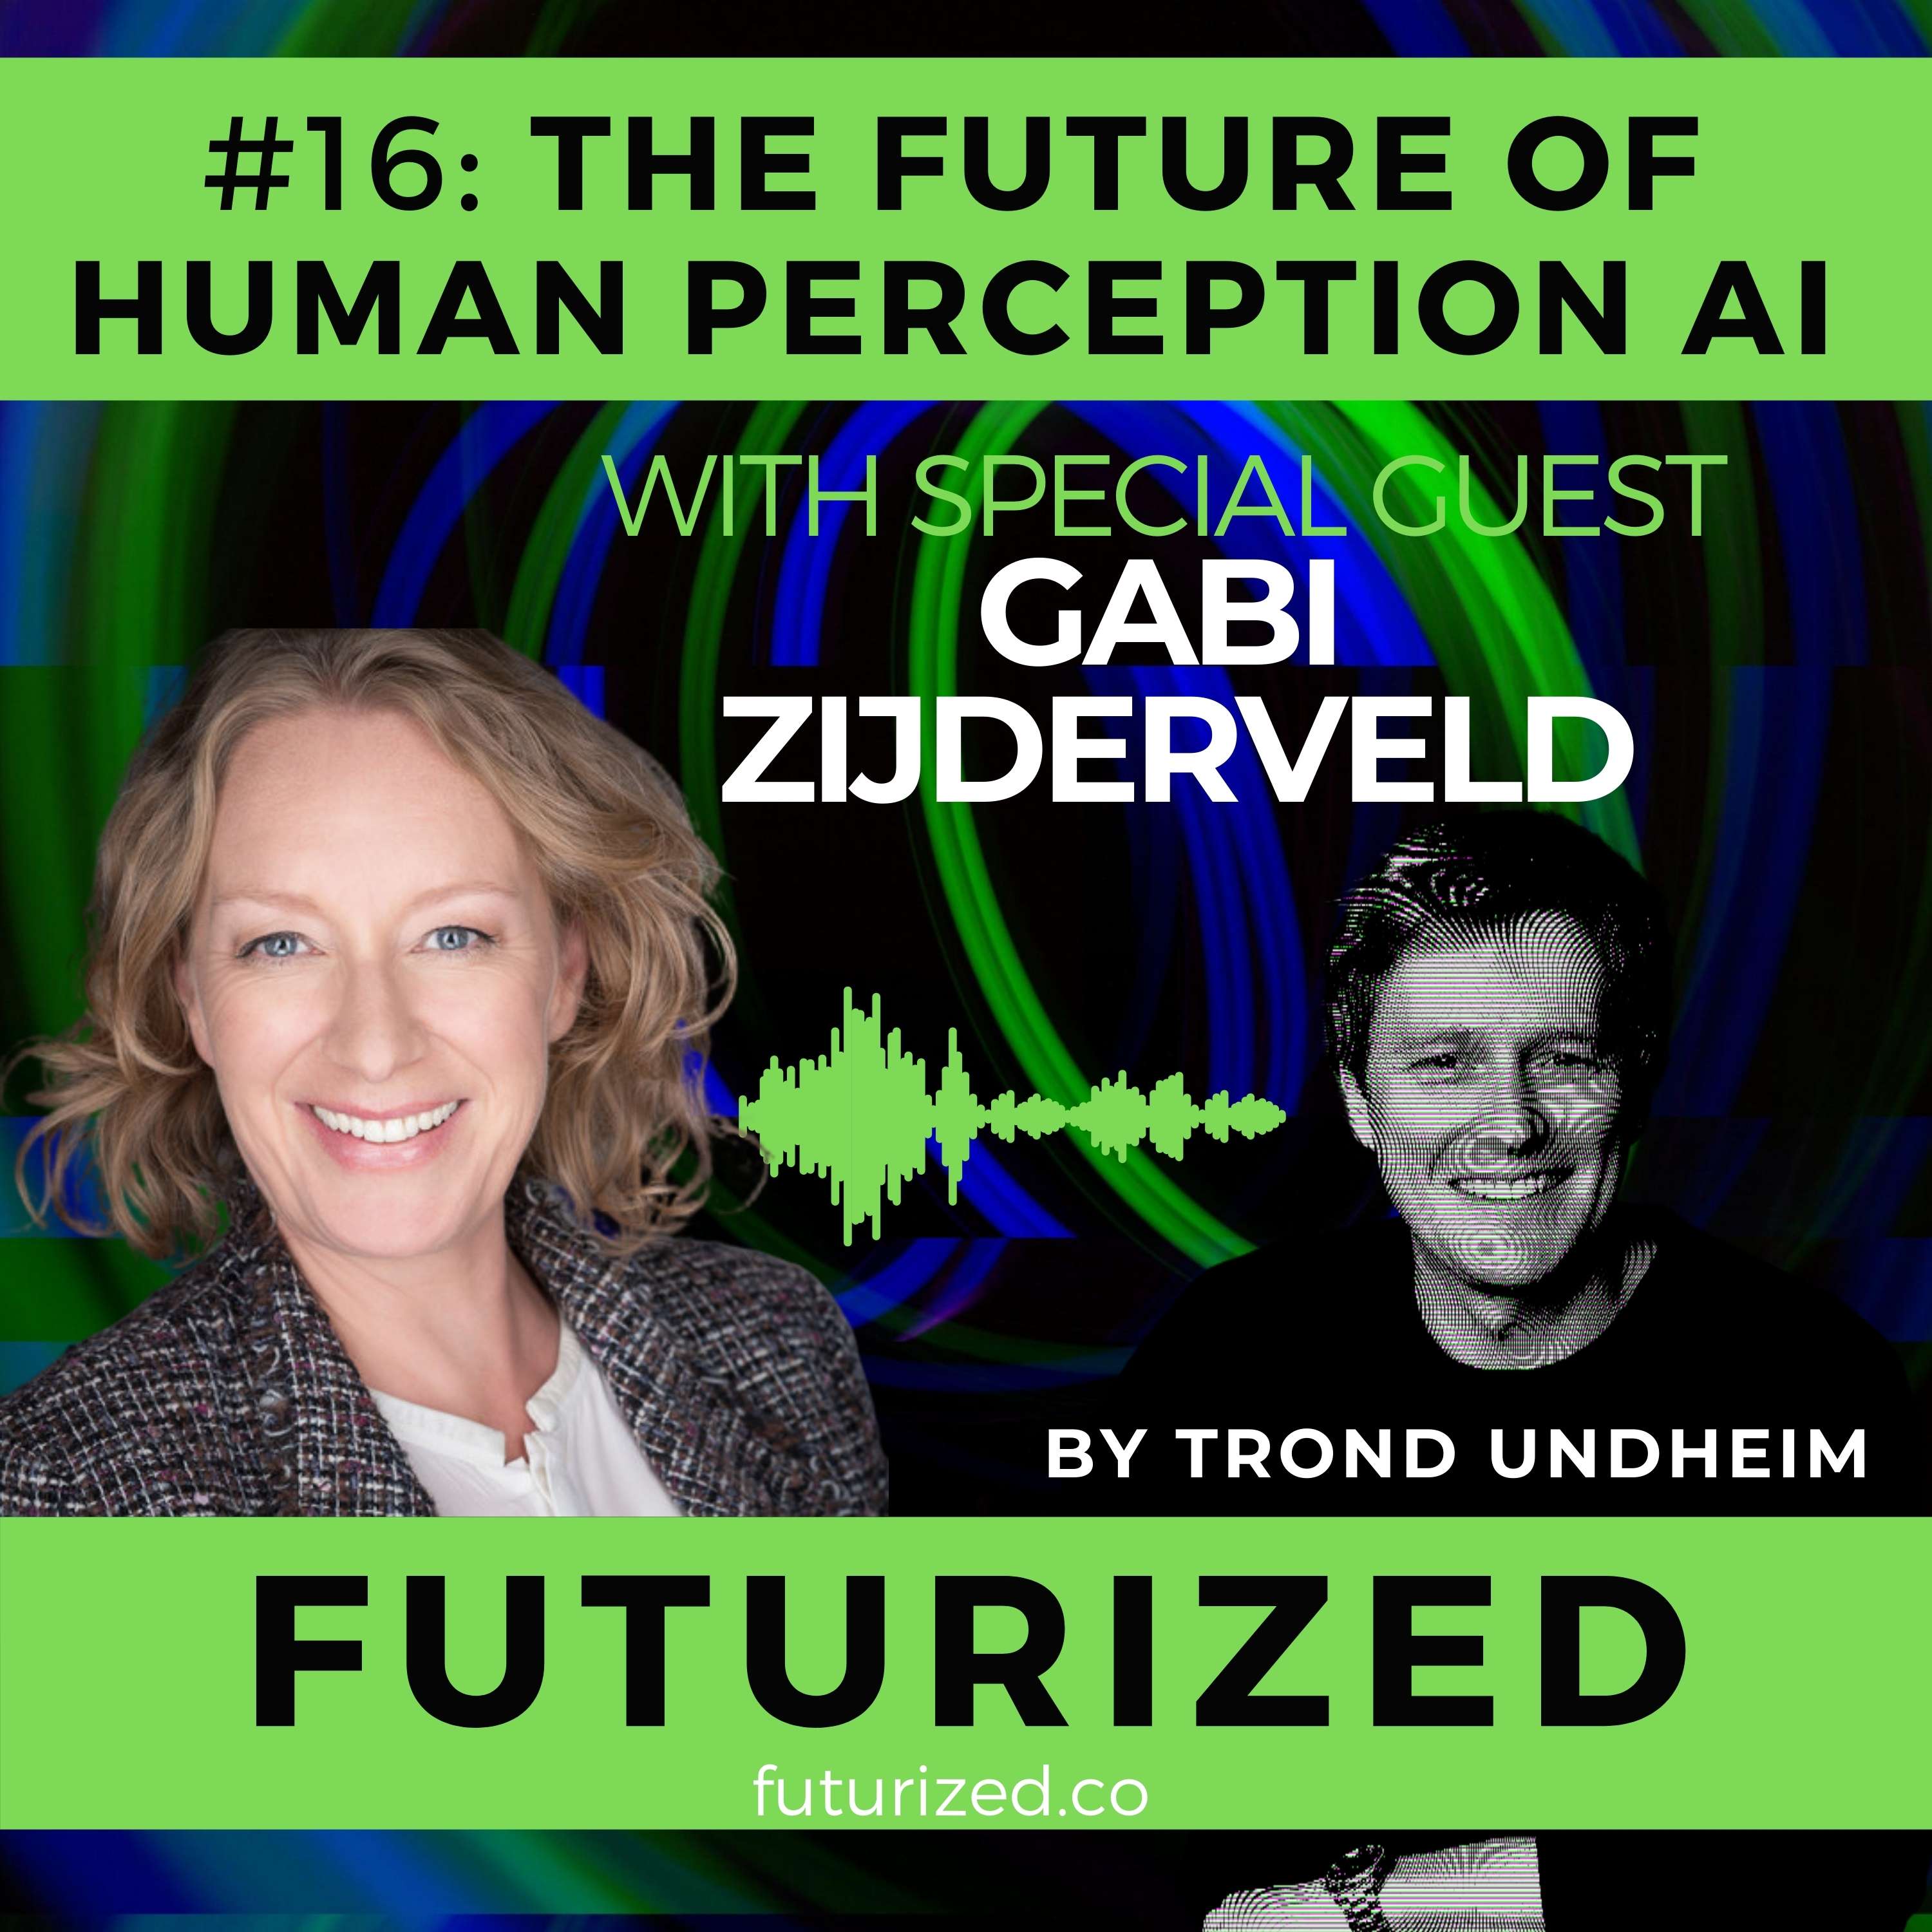 The Future of Human Perception AI Image